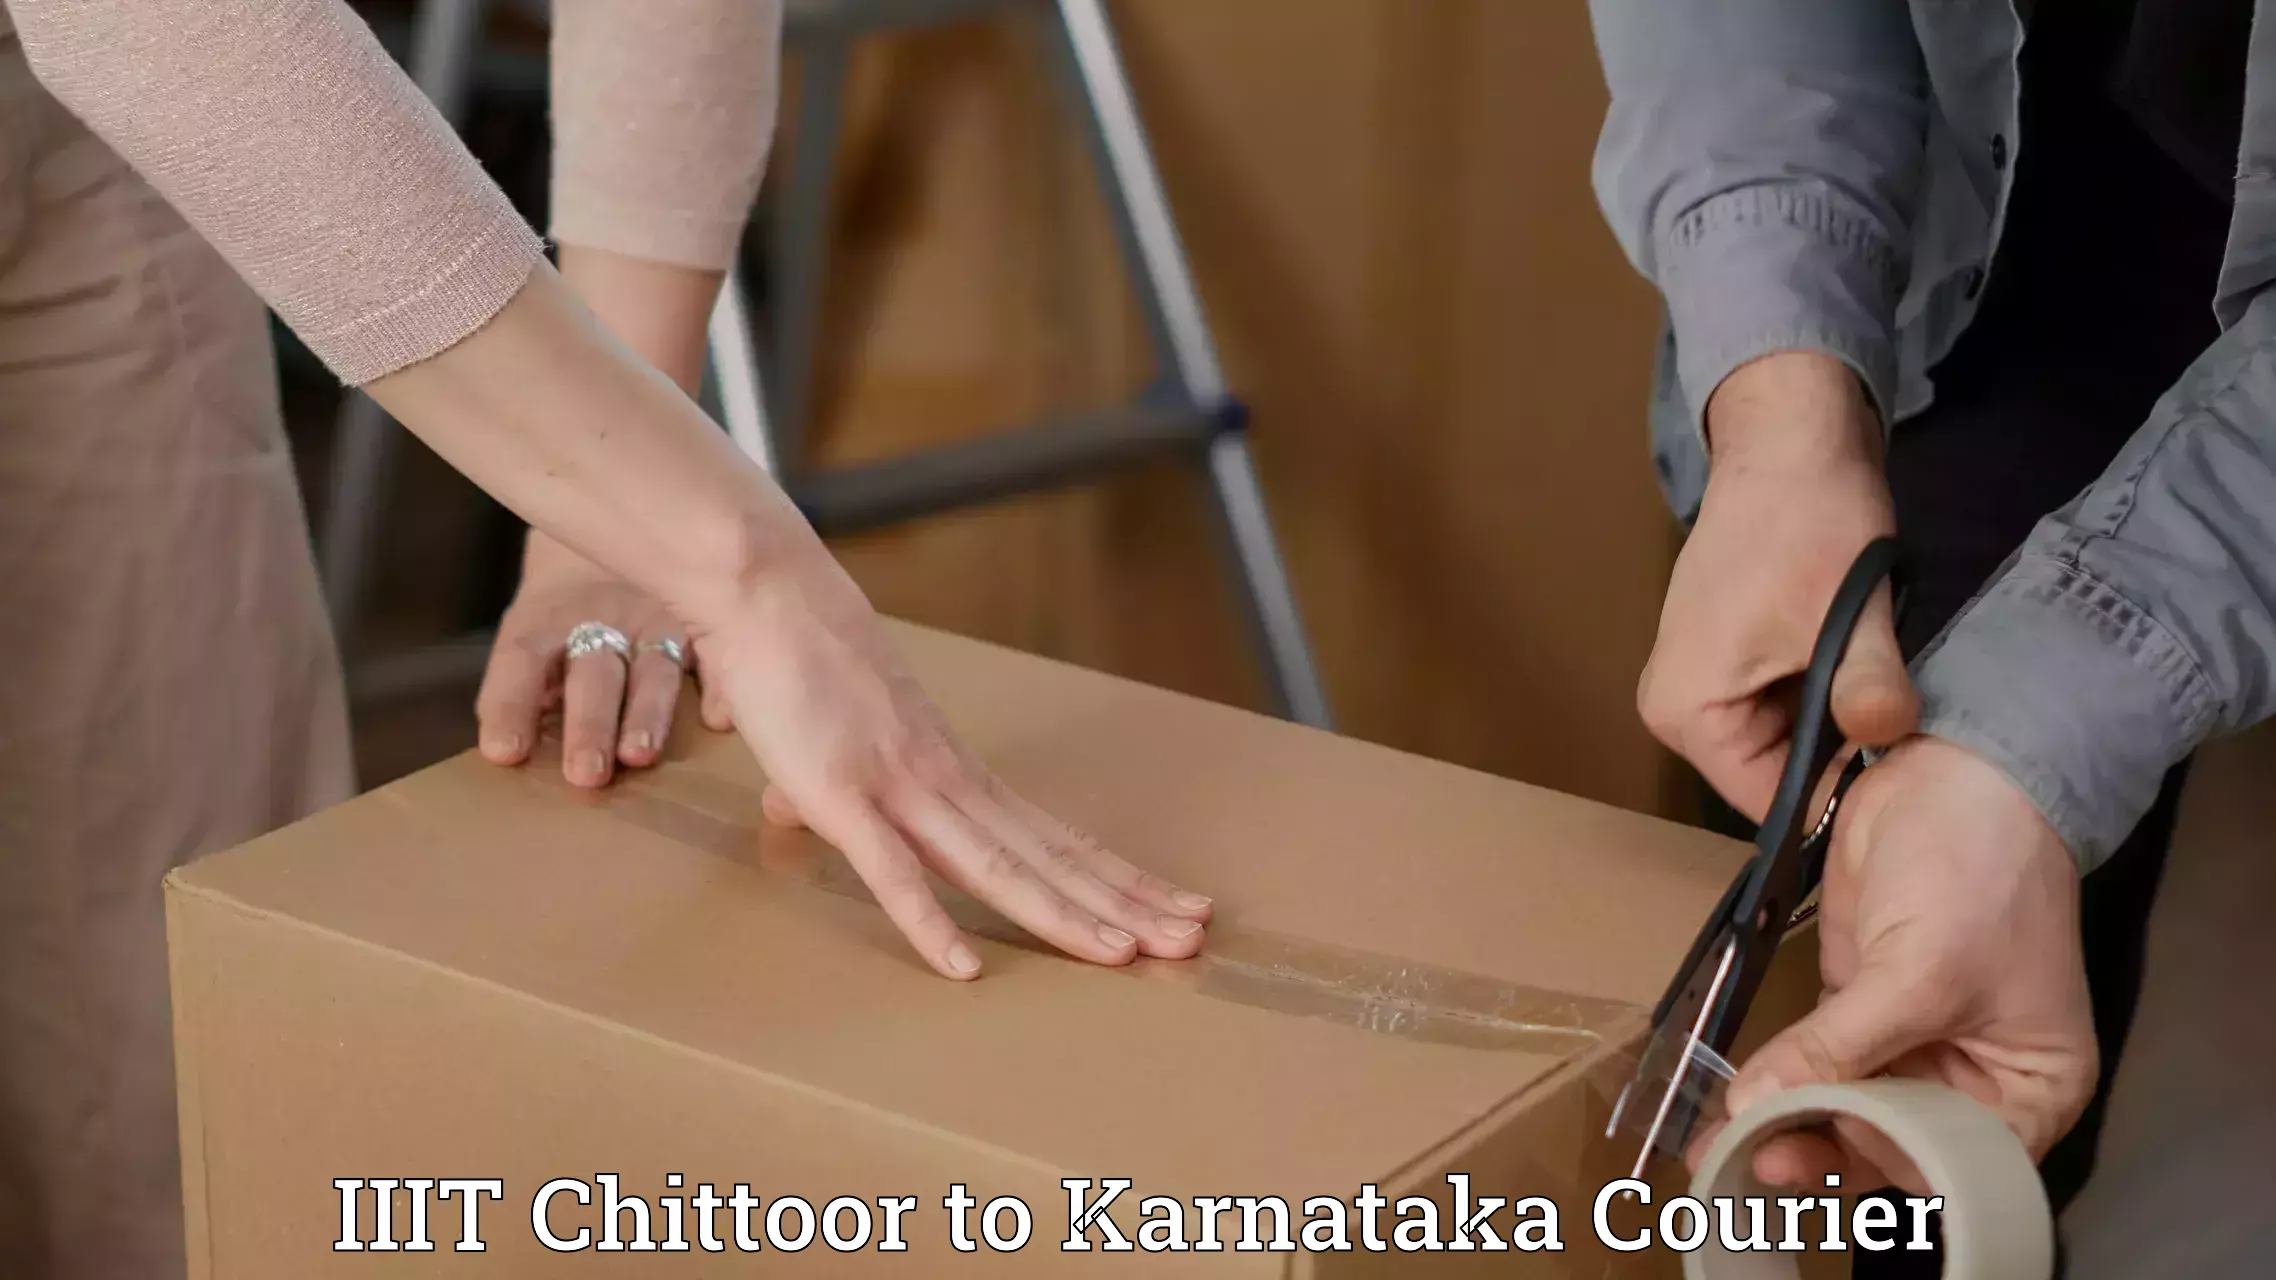 Customizable shipping options in IIIT Chittoor to Dakshina Kannada